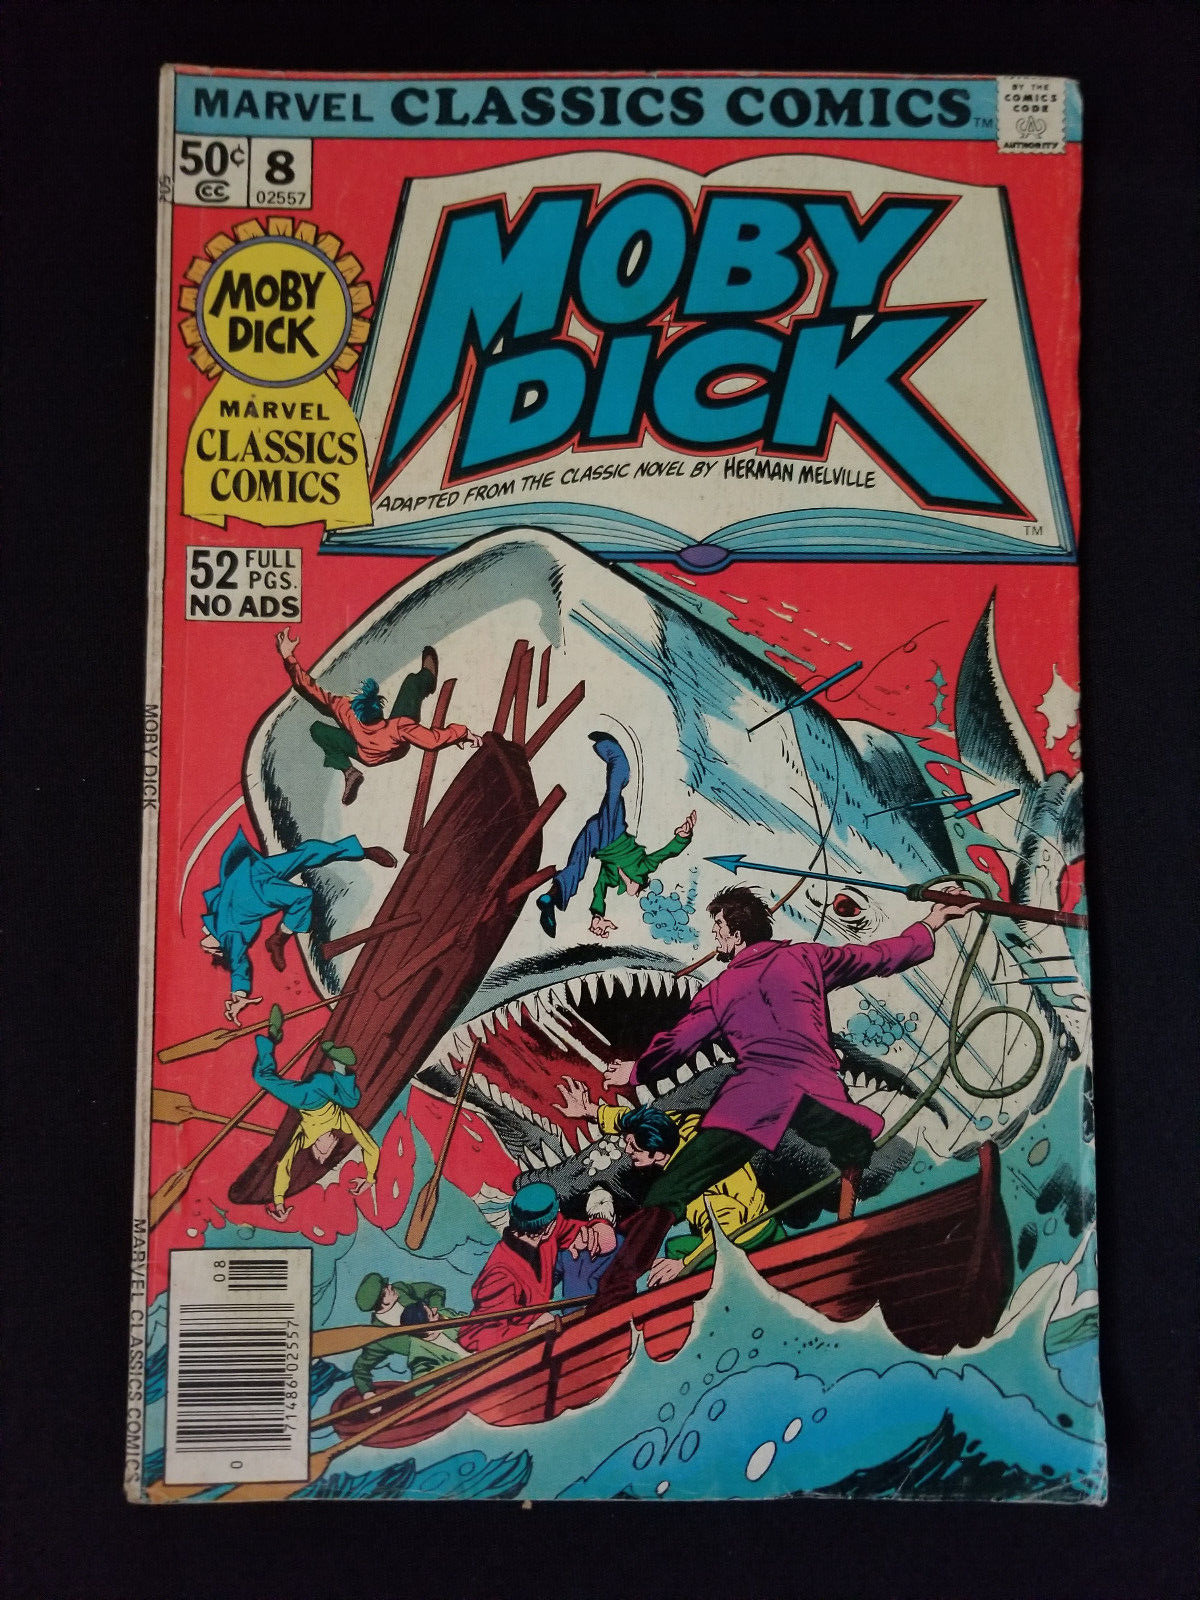 Moby Dick #8 - 1976 Marvel Classics Comics - Good